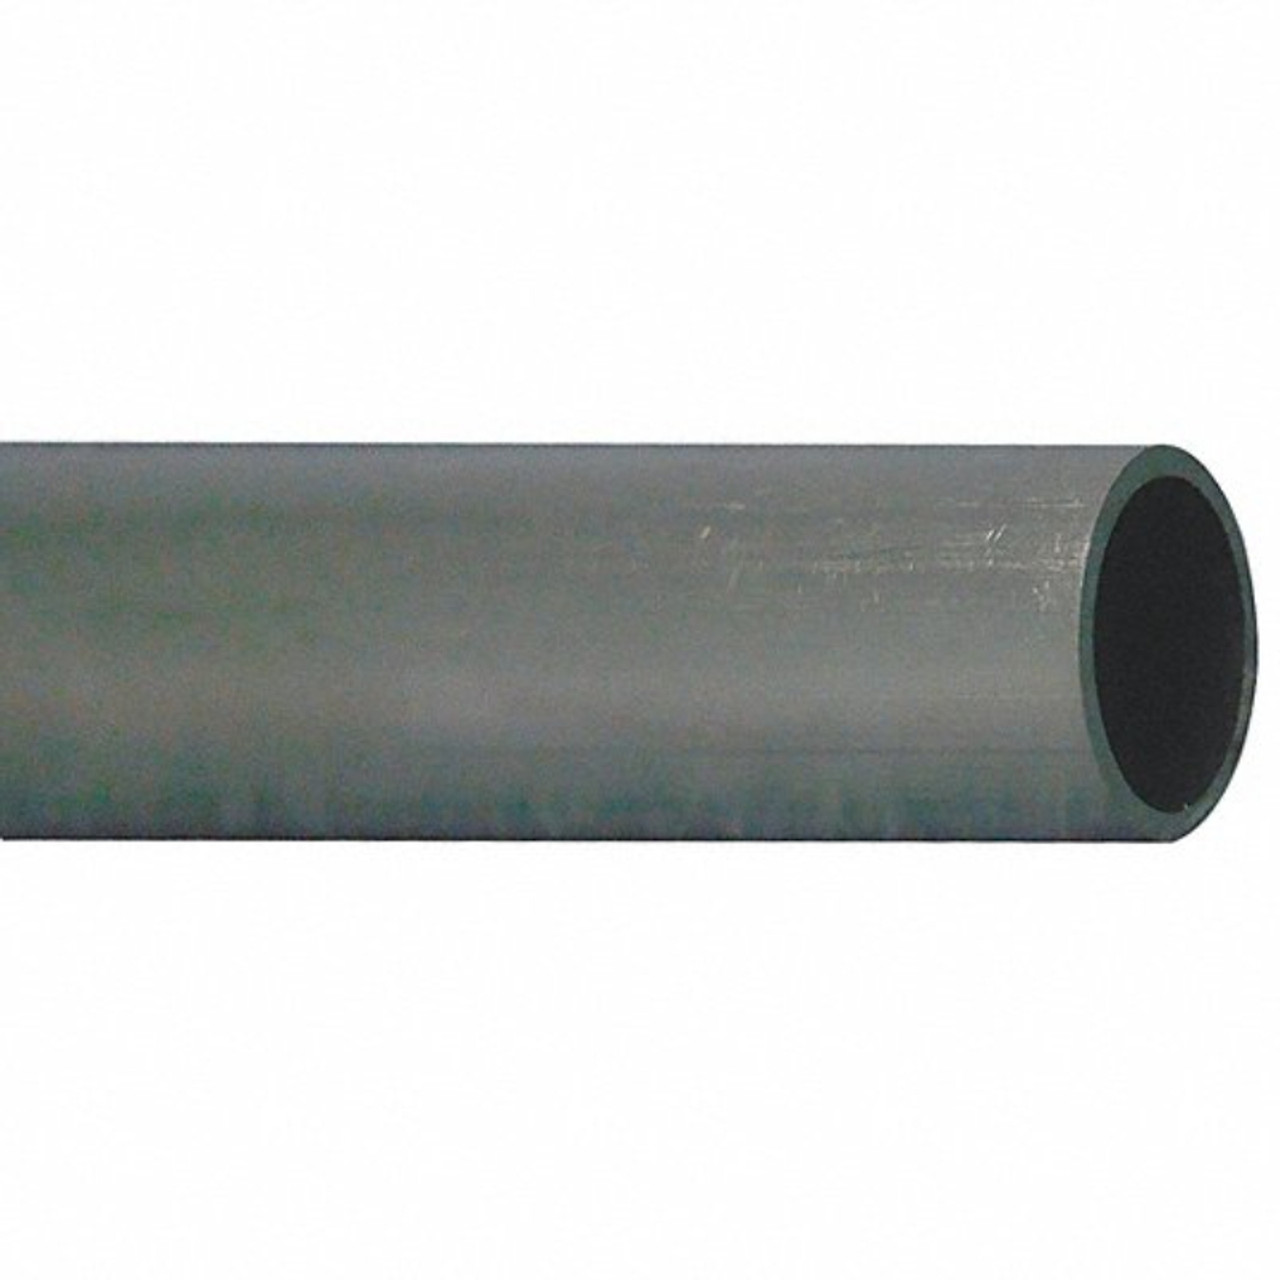 3 K & S Precision Metals 8101 3/32 ALUMINUM TUBE 